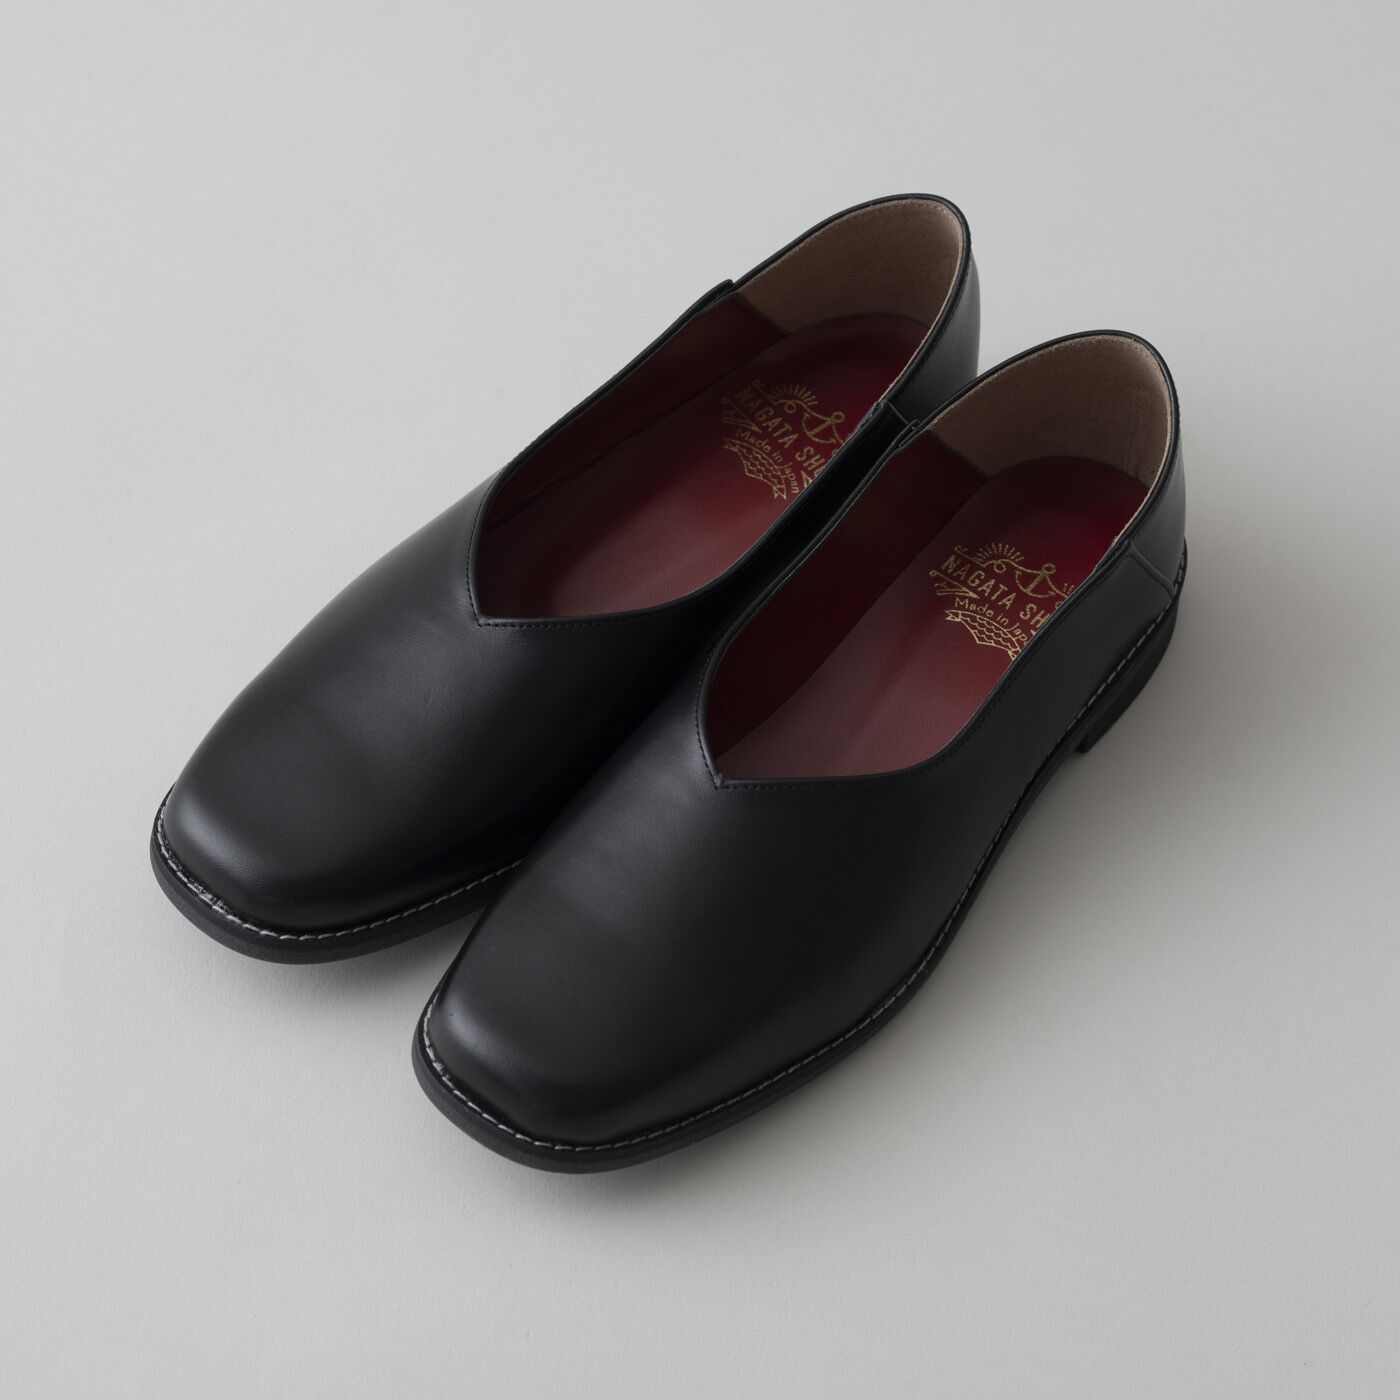 ＆Stories|長田の靴メーカーと作った　職人本革のスクエアノーズシューズ〈ブラック〉|甲高幅広の足もすっぽり包み込みながらスクエアトウで指の当たりを軽減し、中敷きには足裏に心地いいクッションを入れました。